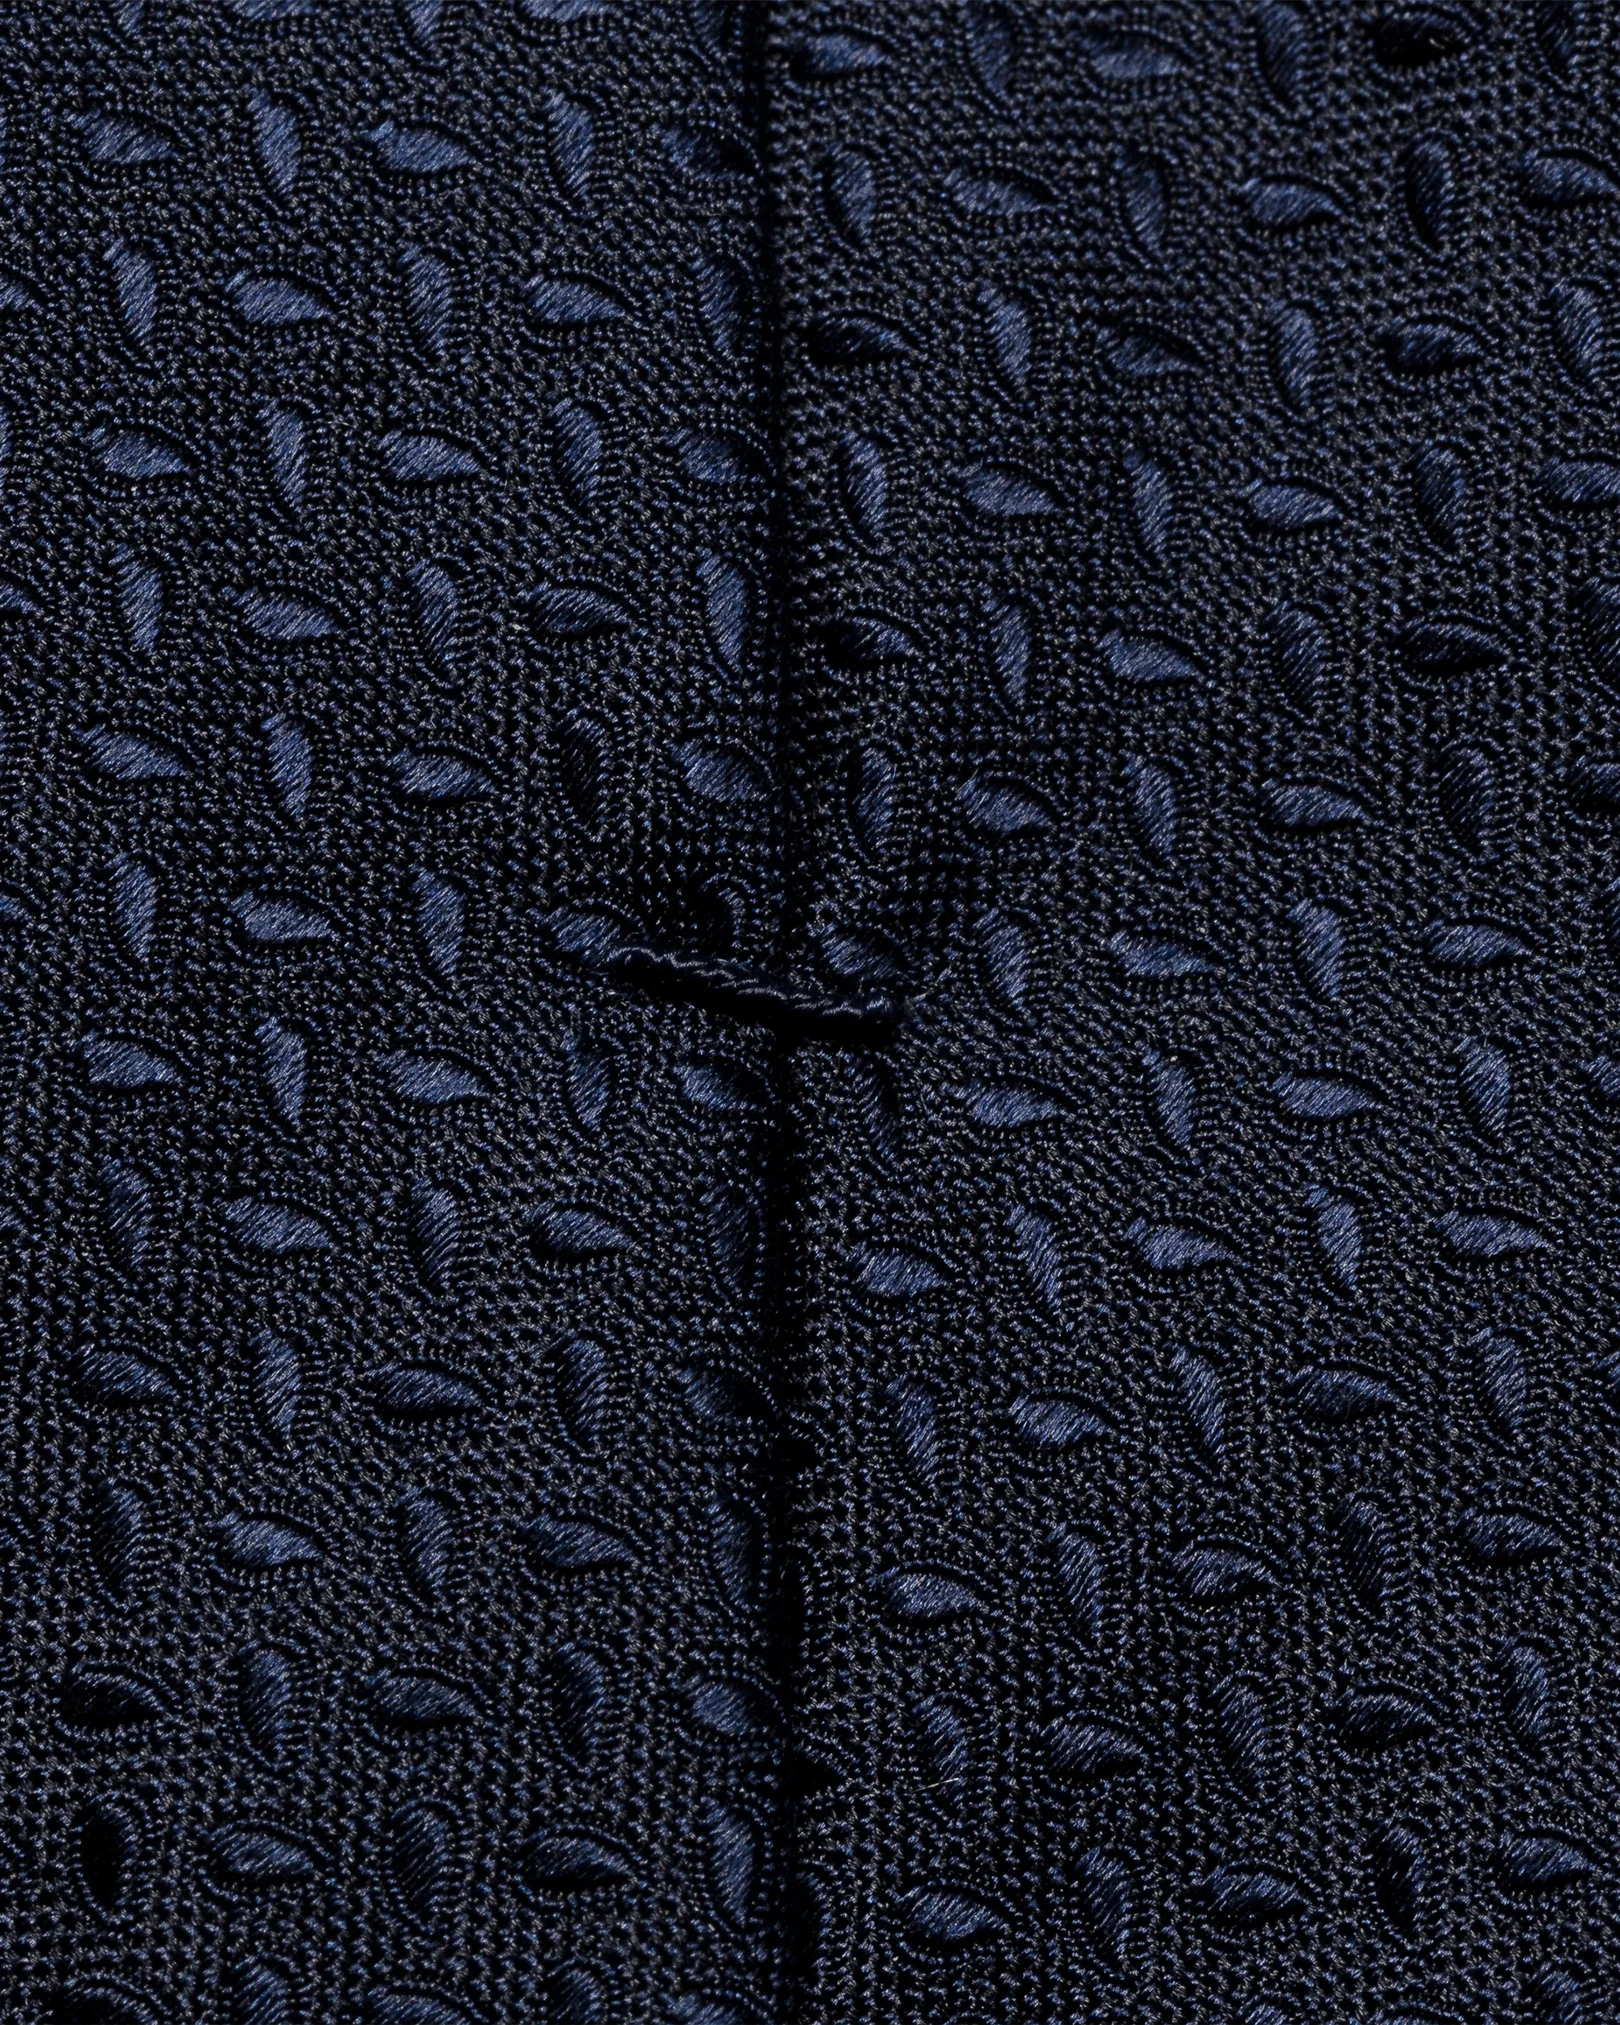 Eton - navy blue medallion pattern